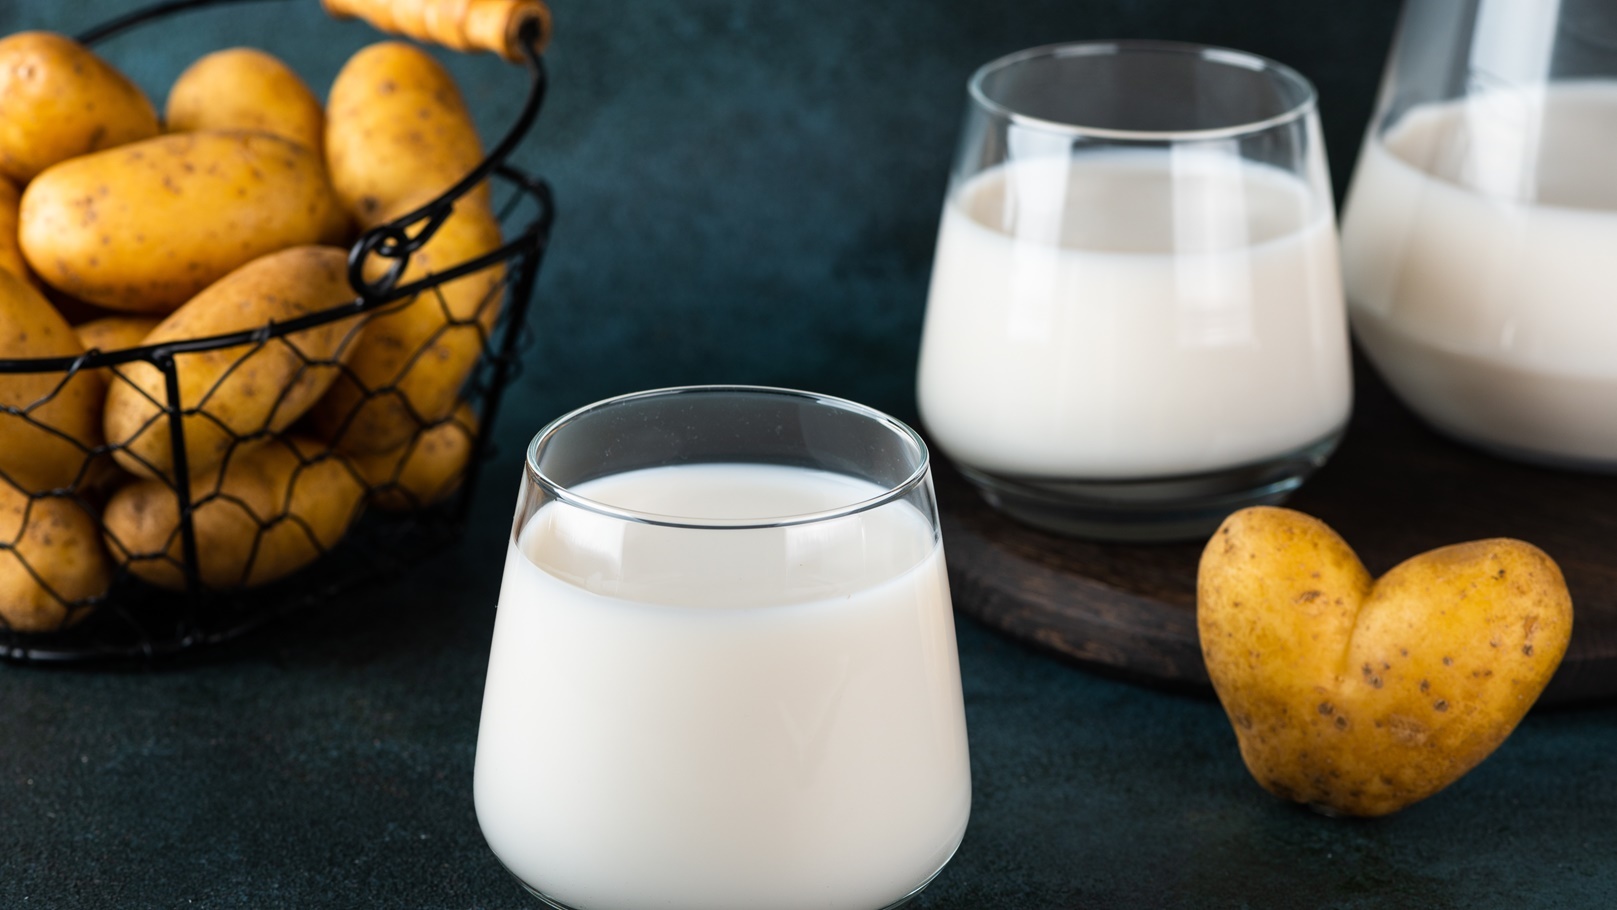 pouring-vegan-potato-milk-in-glass-and-potato-in-b-2022-02-10-00-11-16-utc